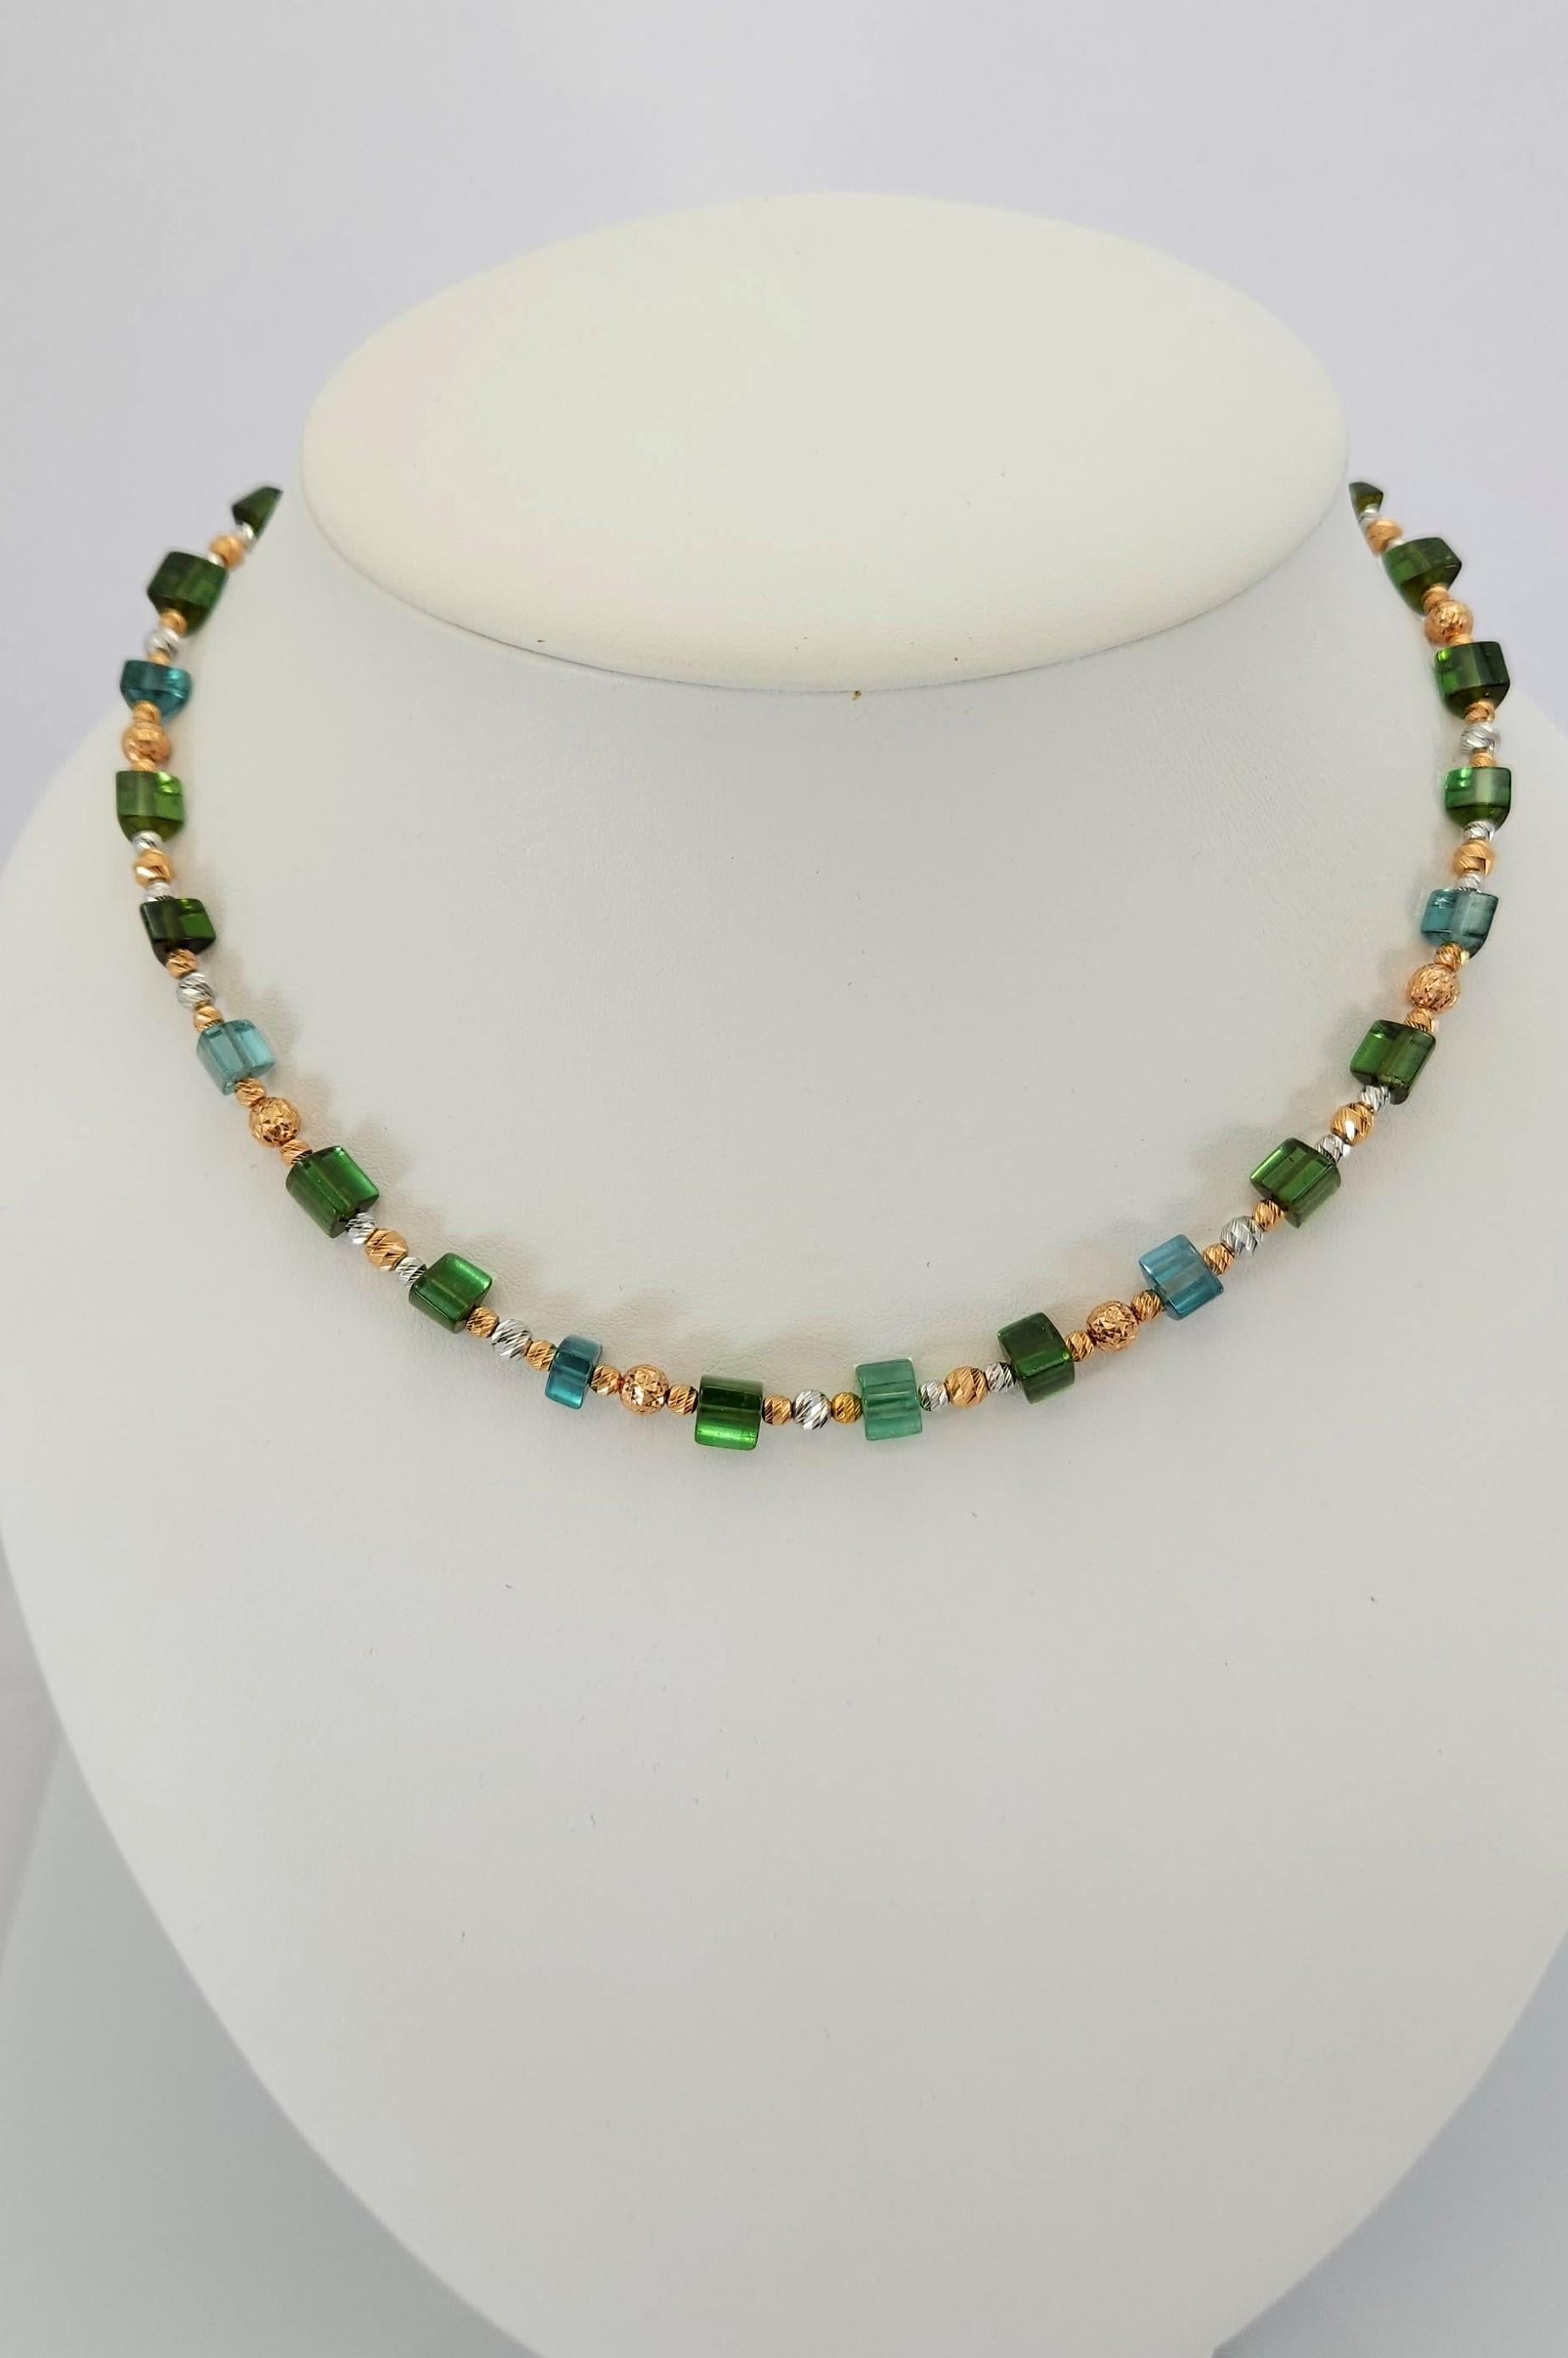 Diese natürliche Halskette mit grün-blauem Turmalinkristall und 18 Karat Rosé- und Weißgold ist handgefertigt.
Sowohl das Schneiden als auch die Vergoldung sind in deutscher Qualität ausgeführt. Der Schraubverschluss ist einfach zu bedienen und sehr